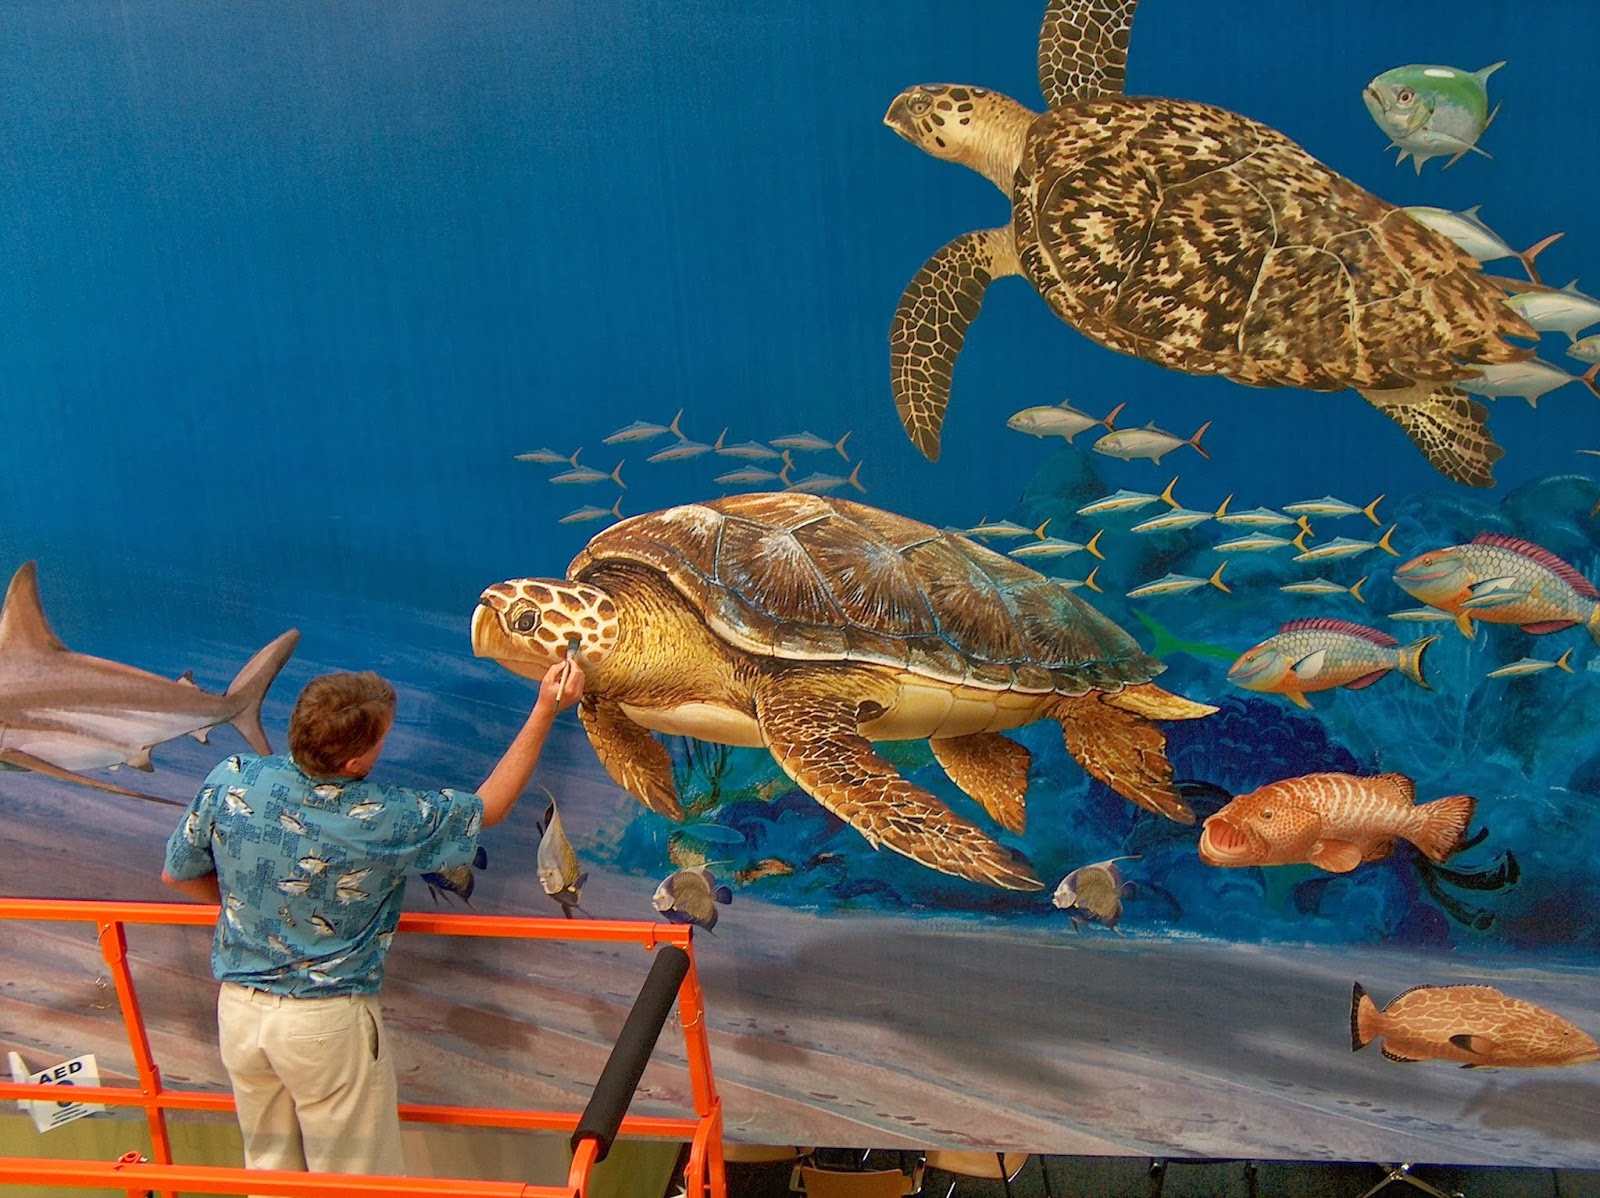 Guy+Harvey+Painting+Turtle+at+NSU+Mural.jpg